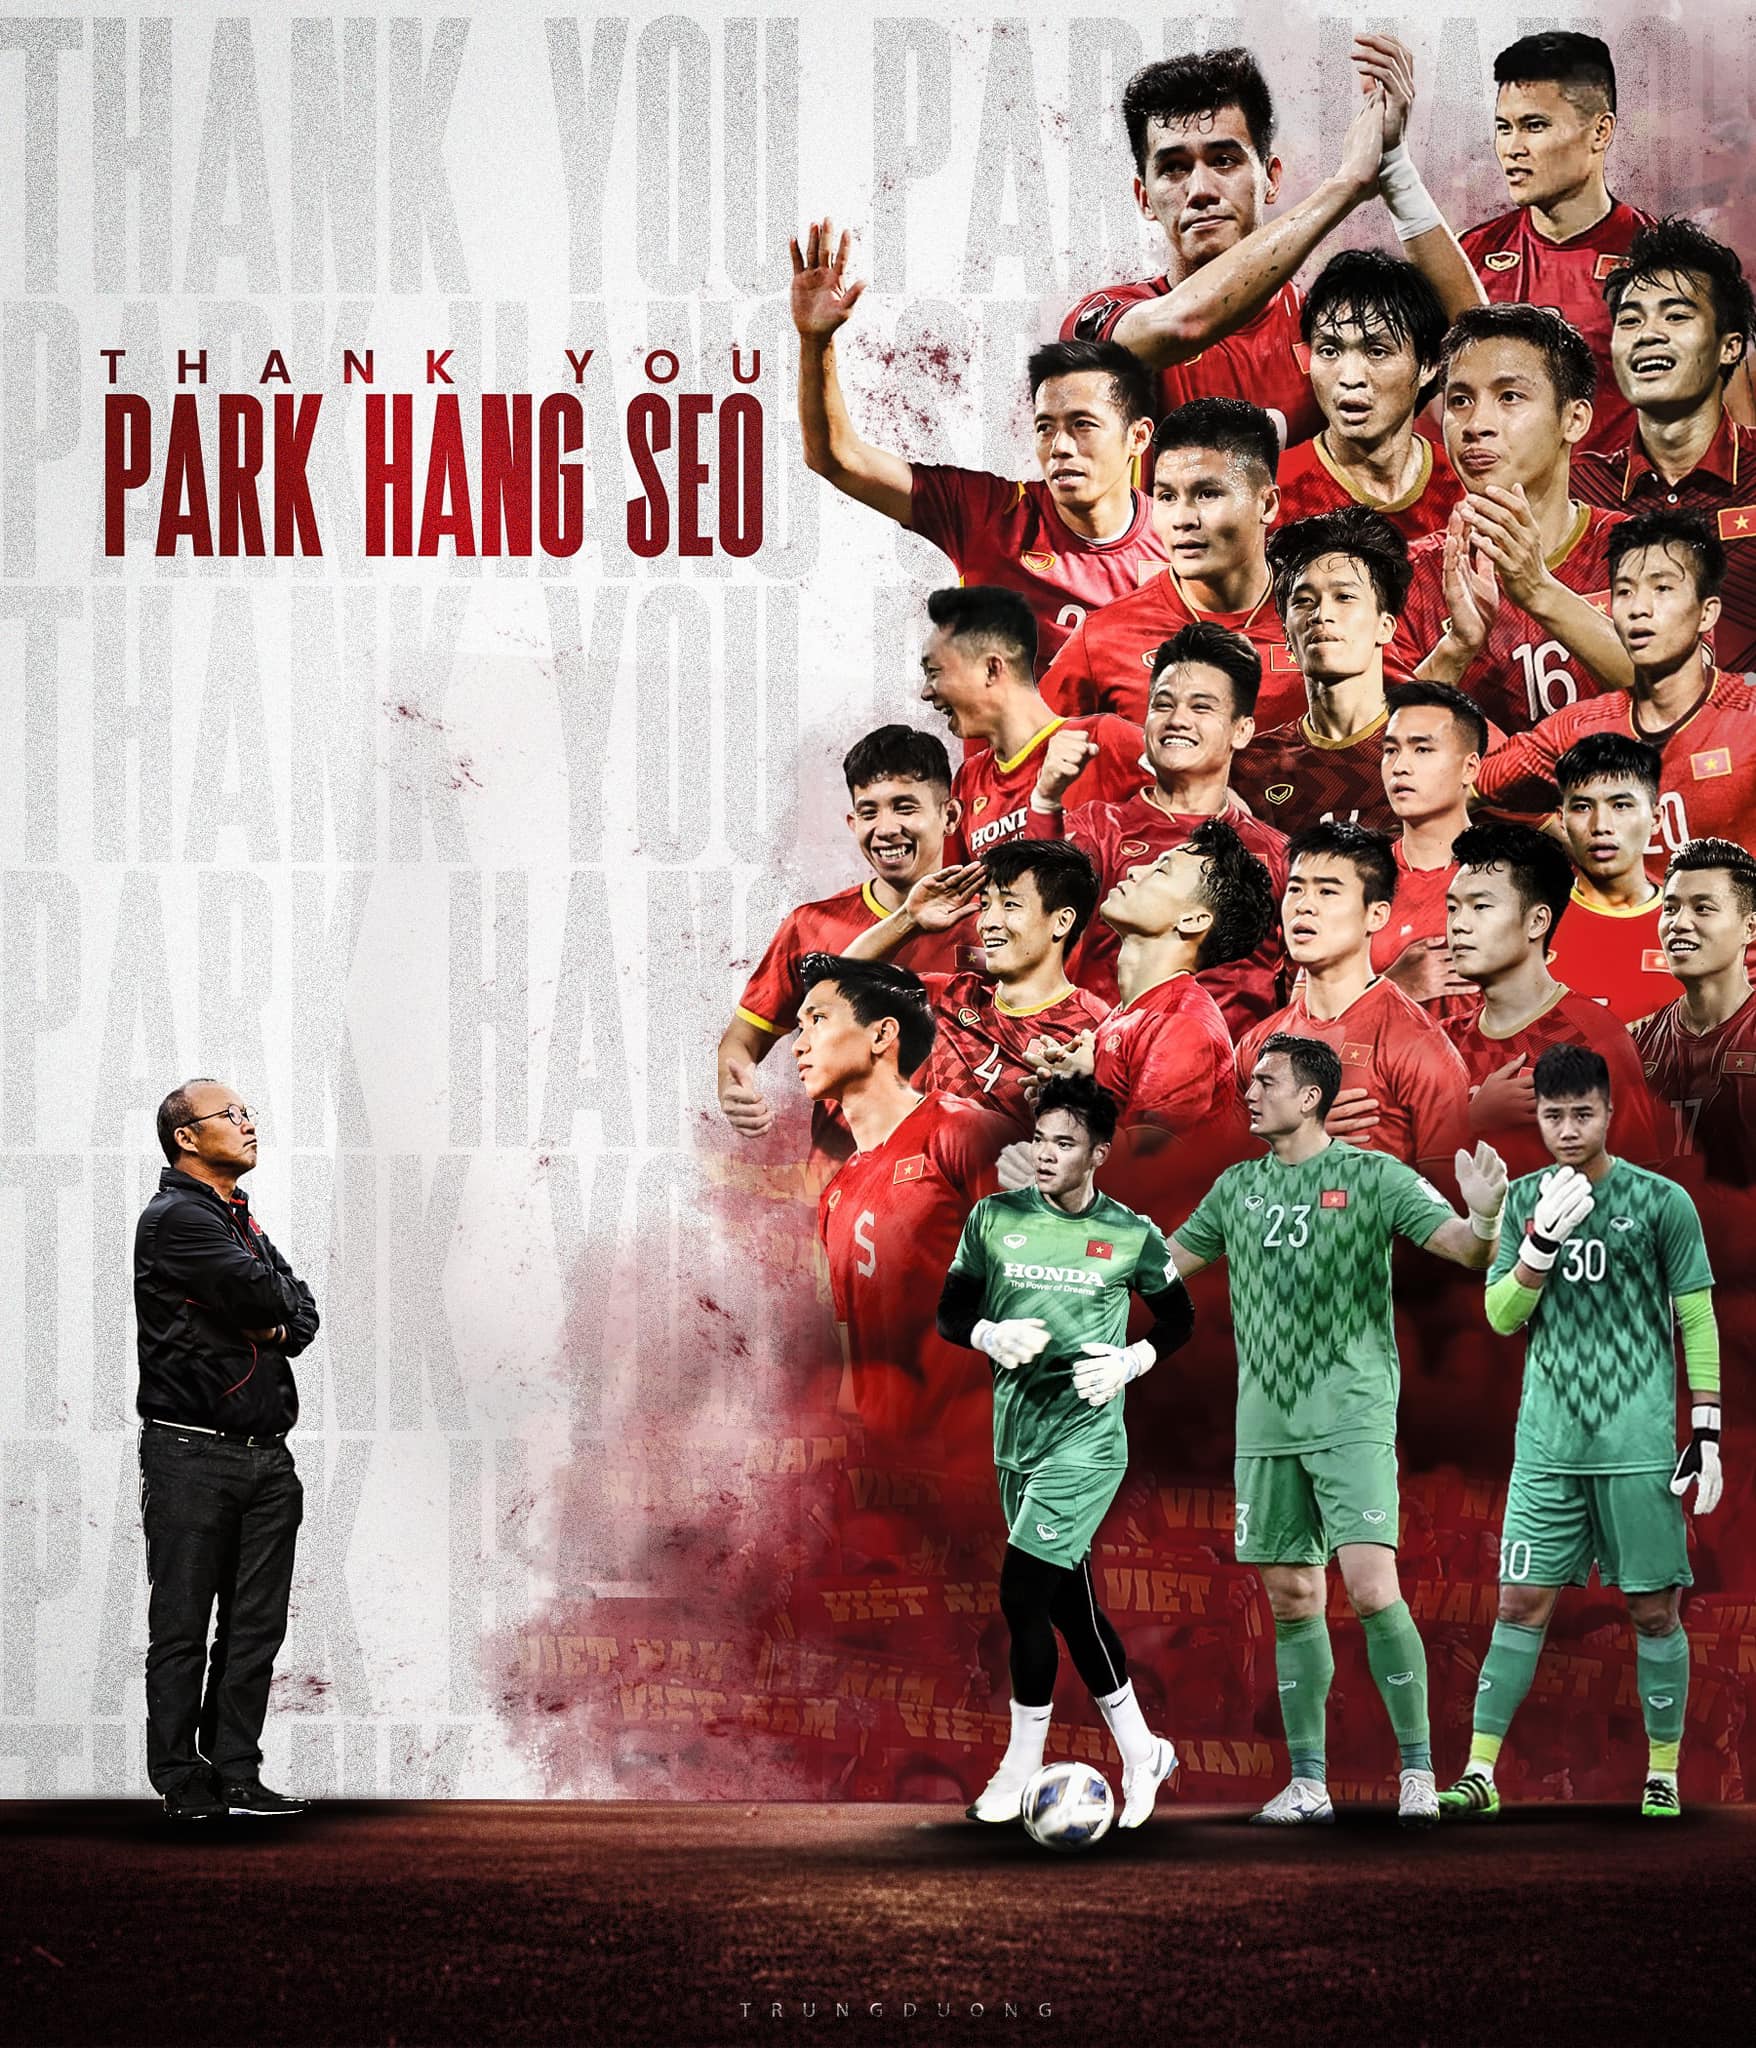 HLV Park từ chối 'ghế giám đốc' VFF, giải nghệ sau khi kết thúc hợp đồng dẫn dắt Đội tuyển Việt Nam?